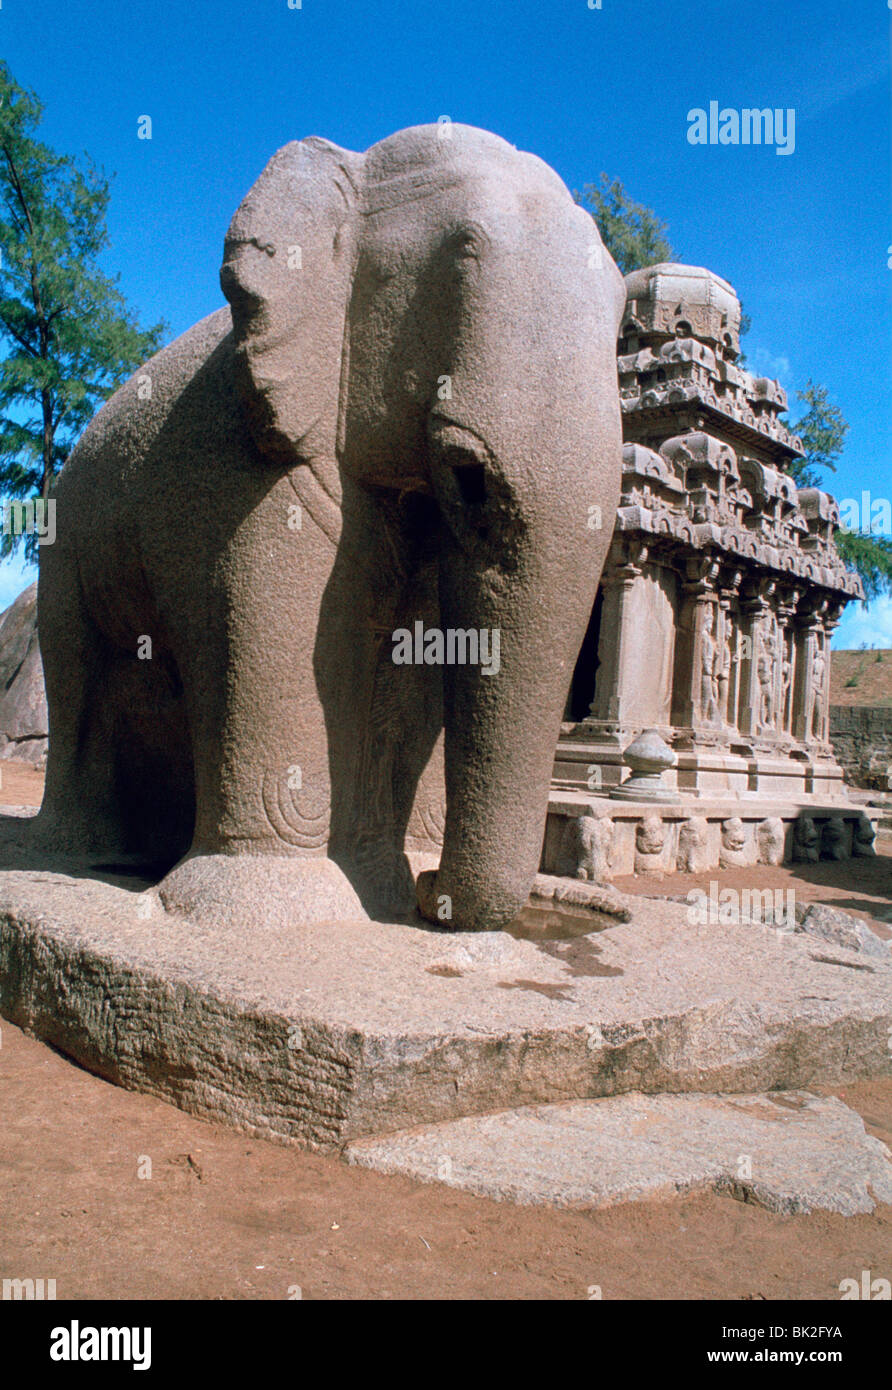 L'éléphant en pierre sculptée, cinq Rathas, Mahabalipuram, Tamil Nadu, Inde. Banque D'Images